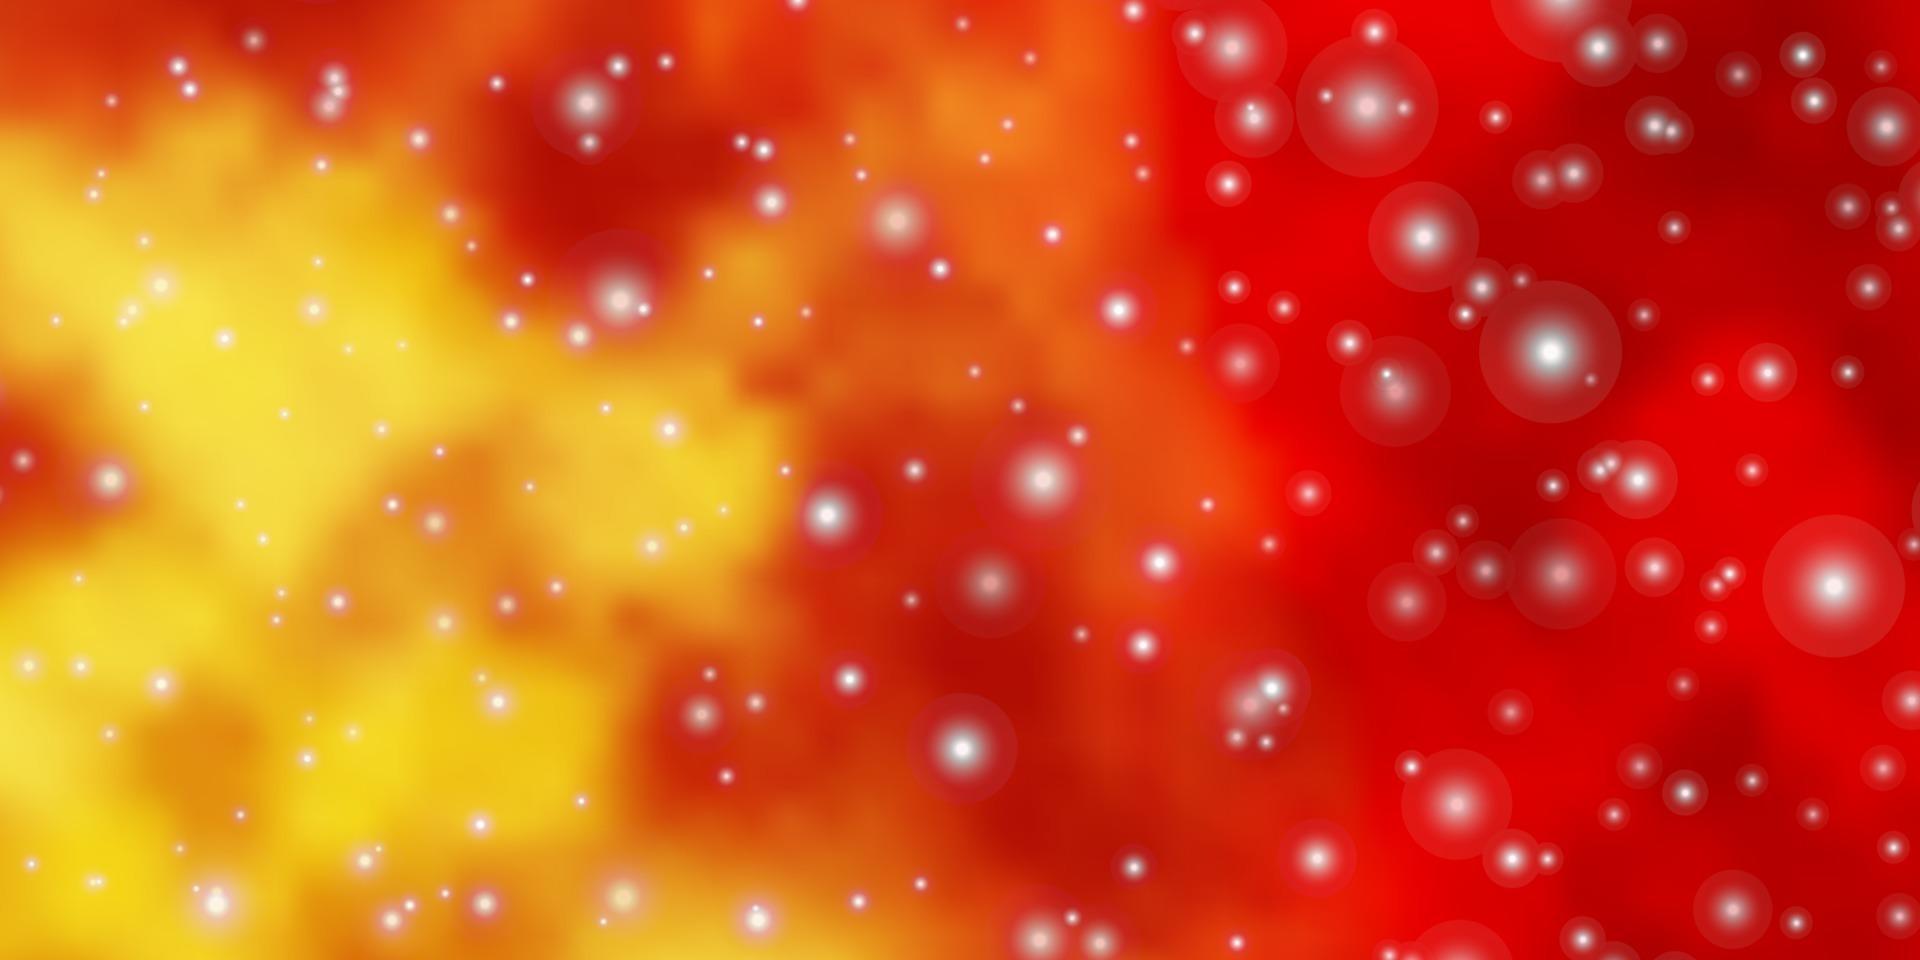 fond de vecteur orange clair avec des étoiles colorées.